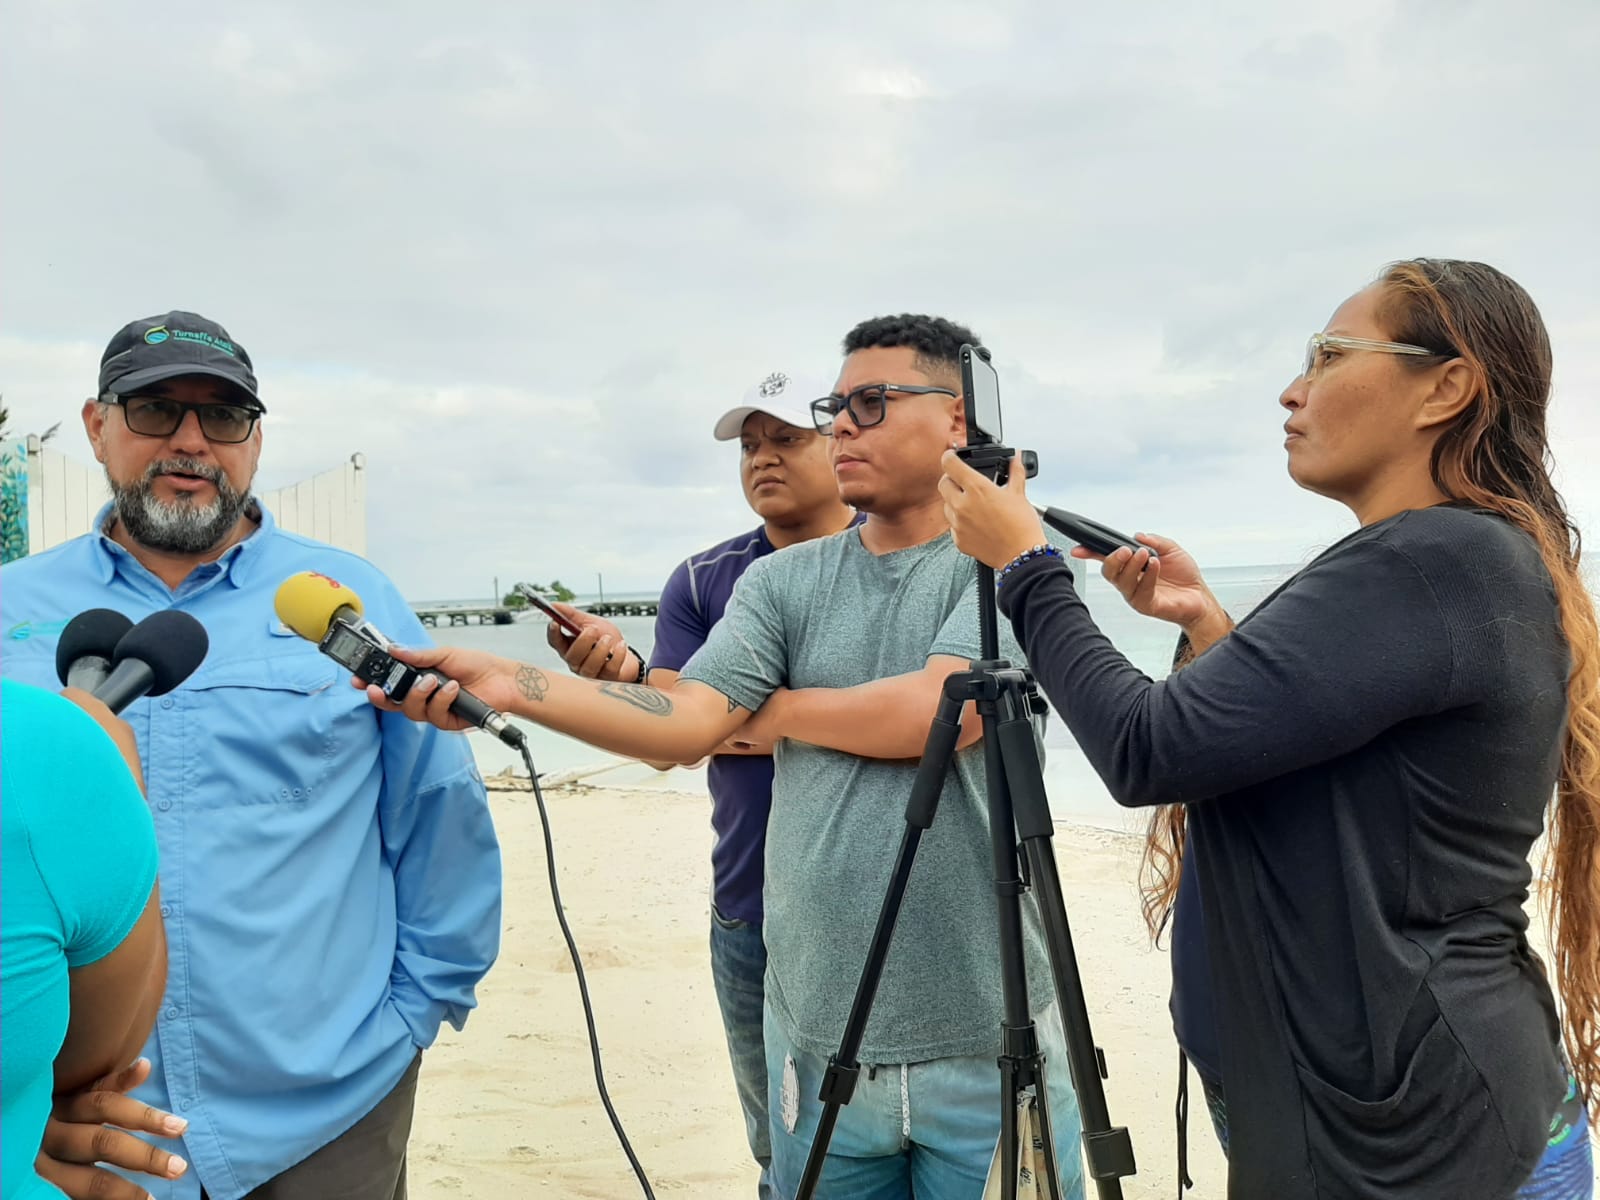 journalists interview a man on a beach